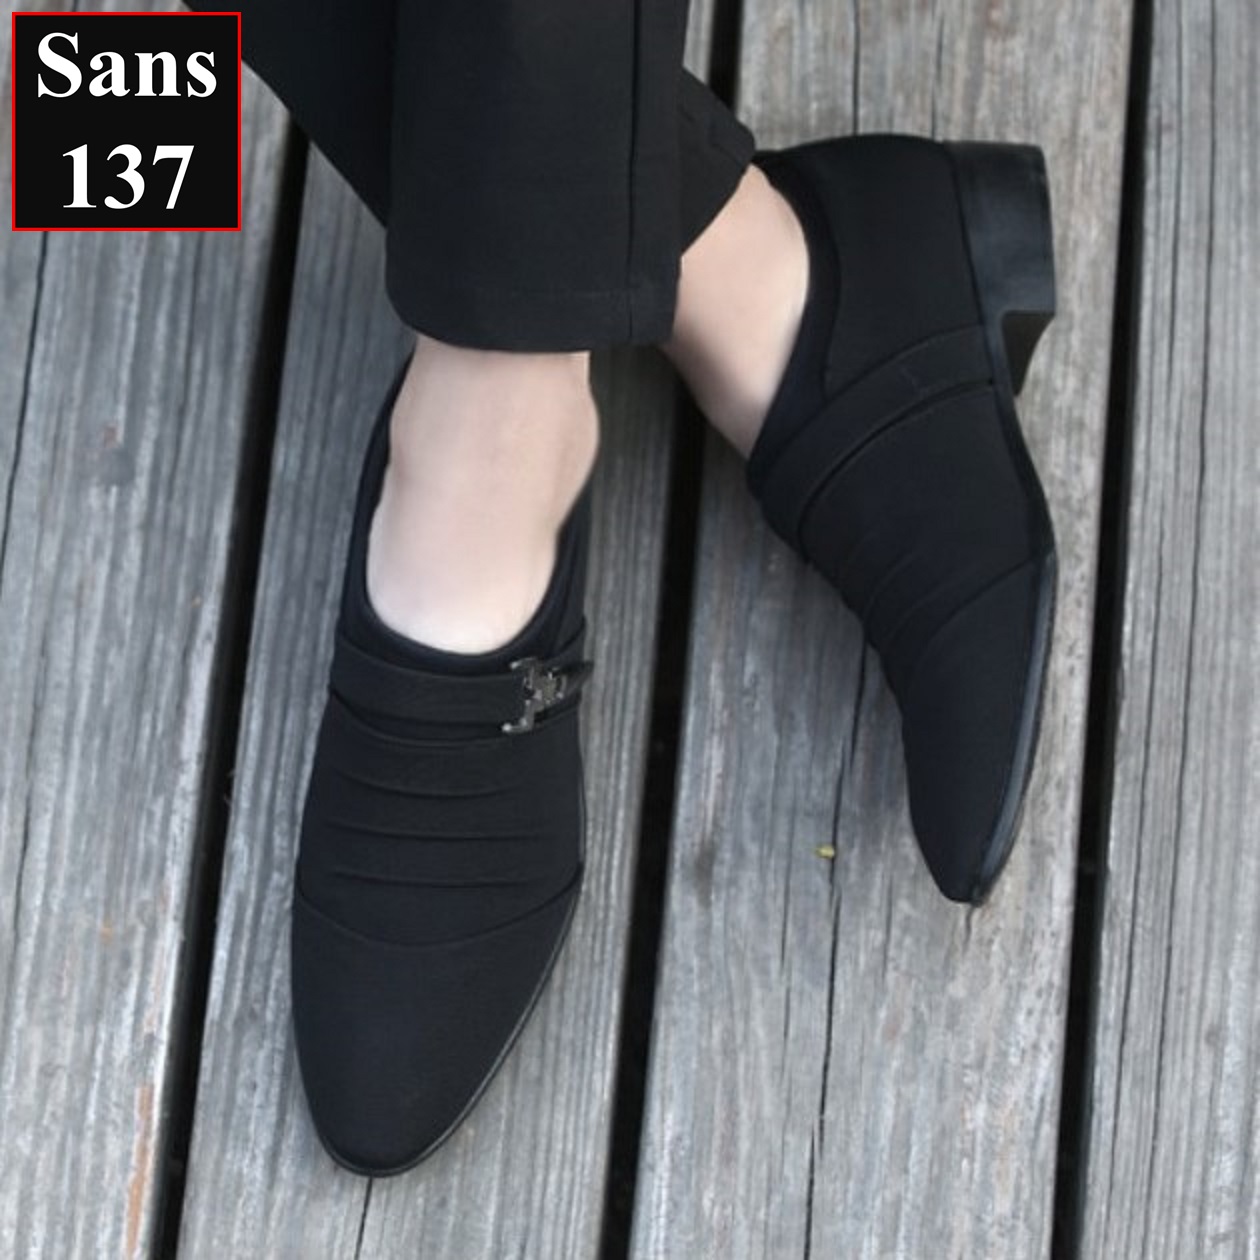 Giày tây nam công sở Sans137 chất vải canvas êm chân mũi nhọn đen size nhỏ 37 bigsize 44 45 46 47 48 hàn quốc trẻ trung